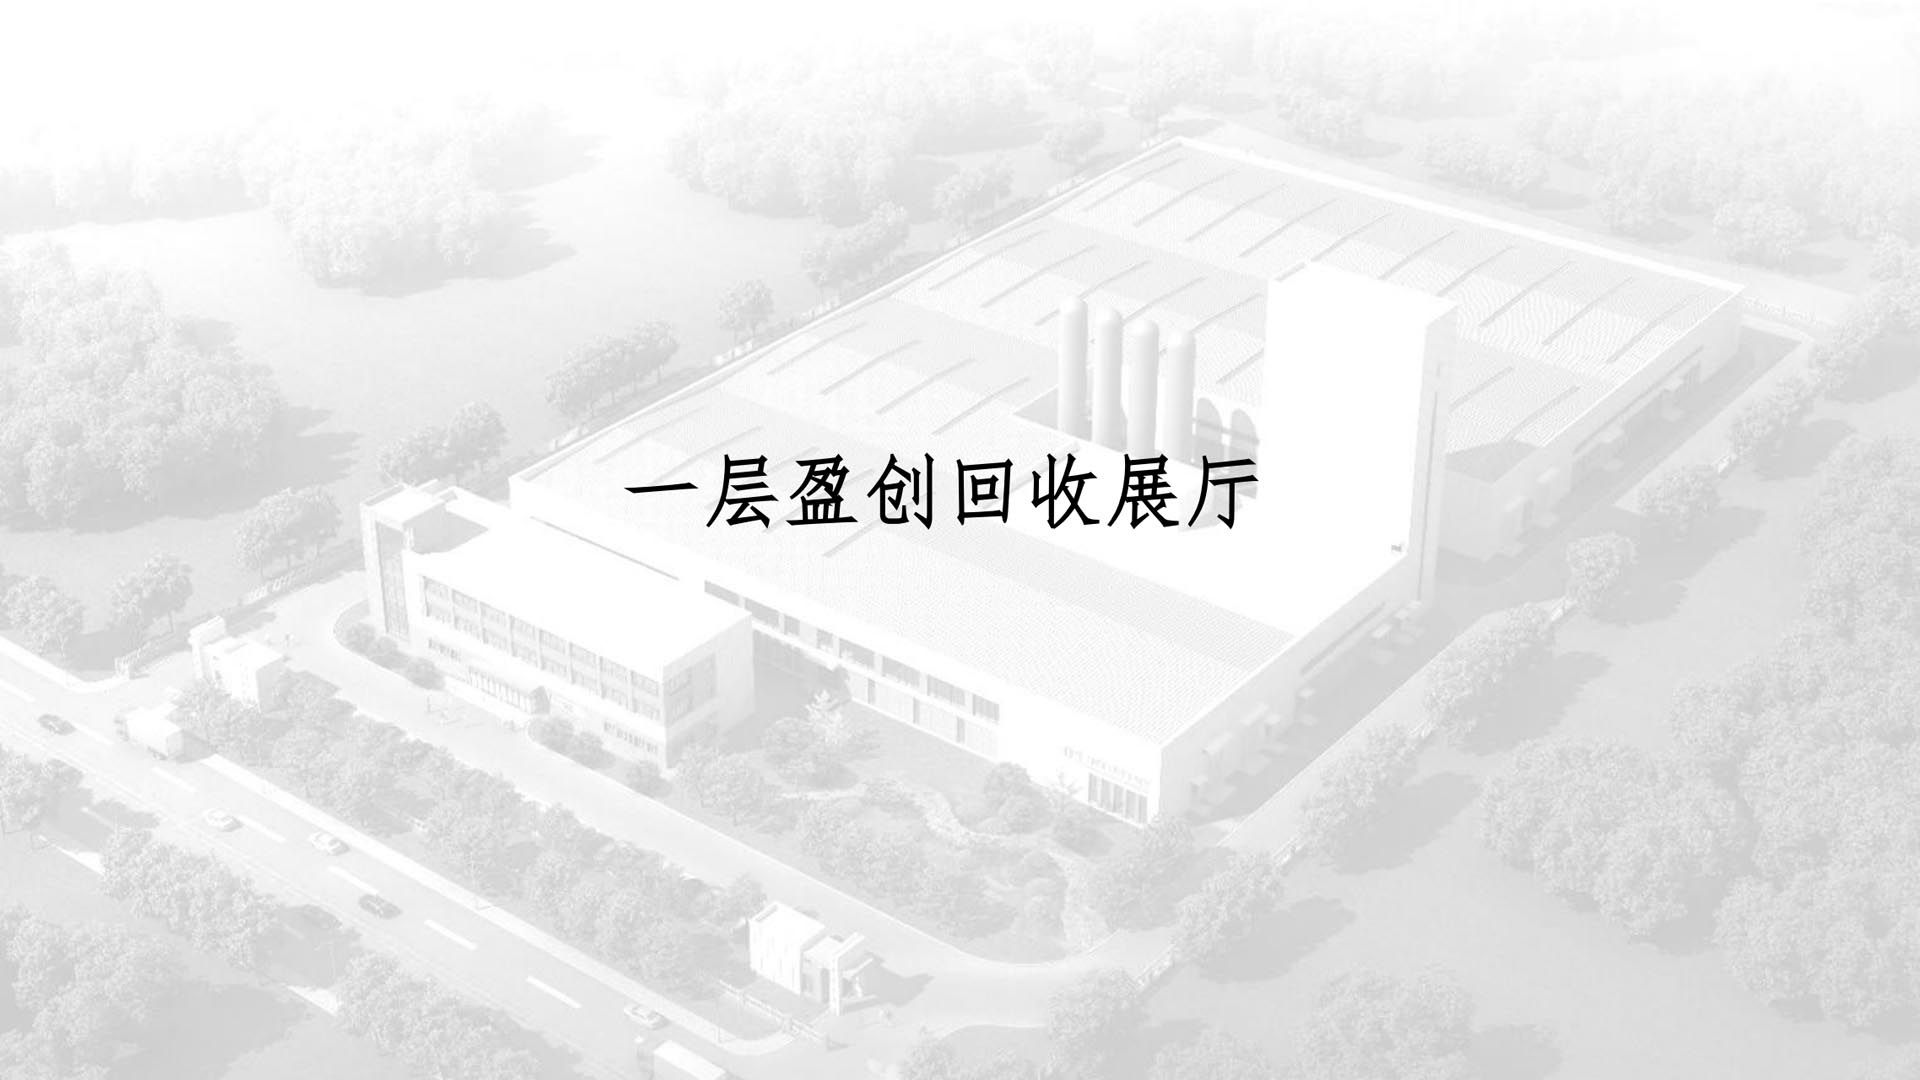 20190509 盈创天津综合楼设计效果图版本-_01.jpg